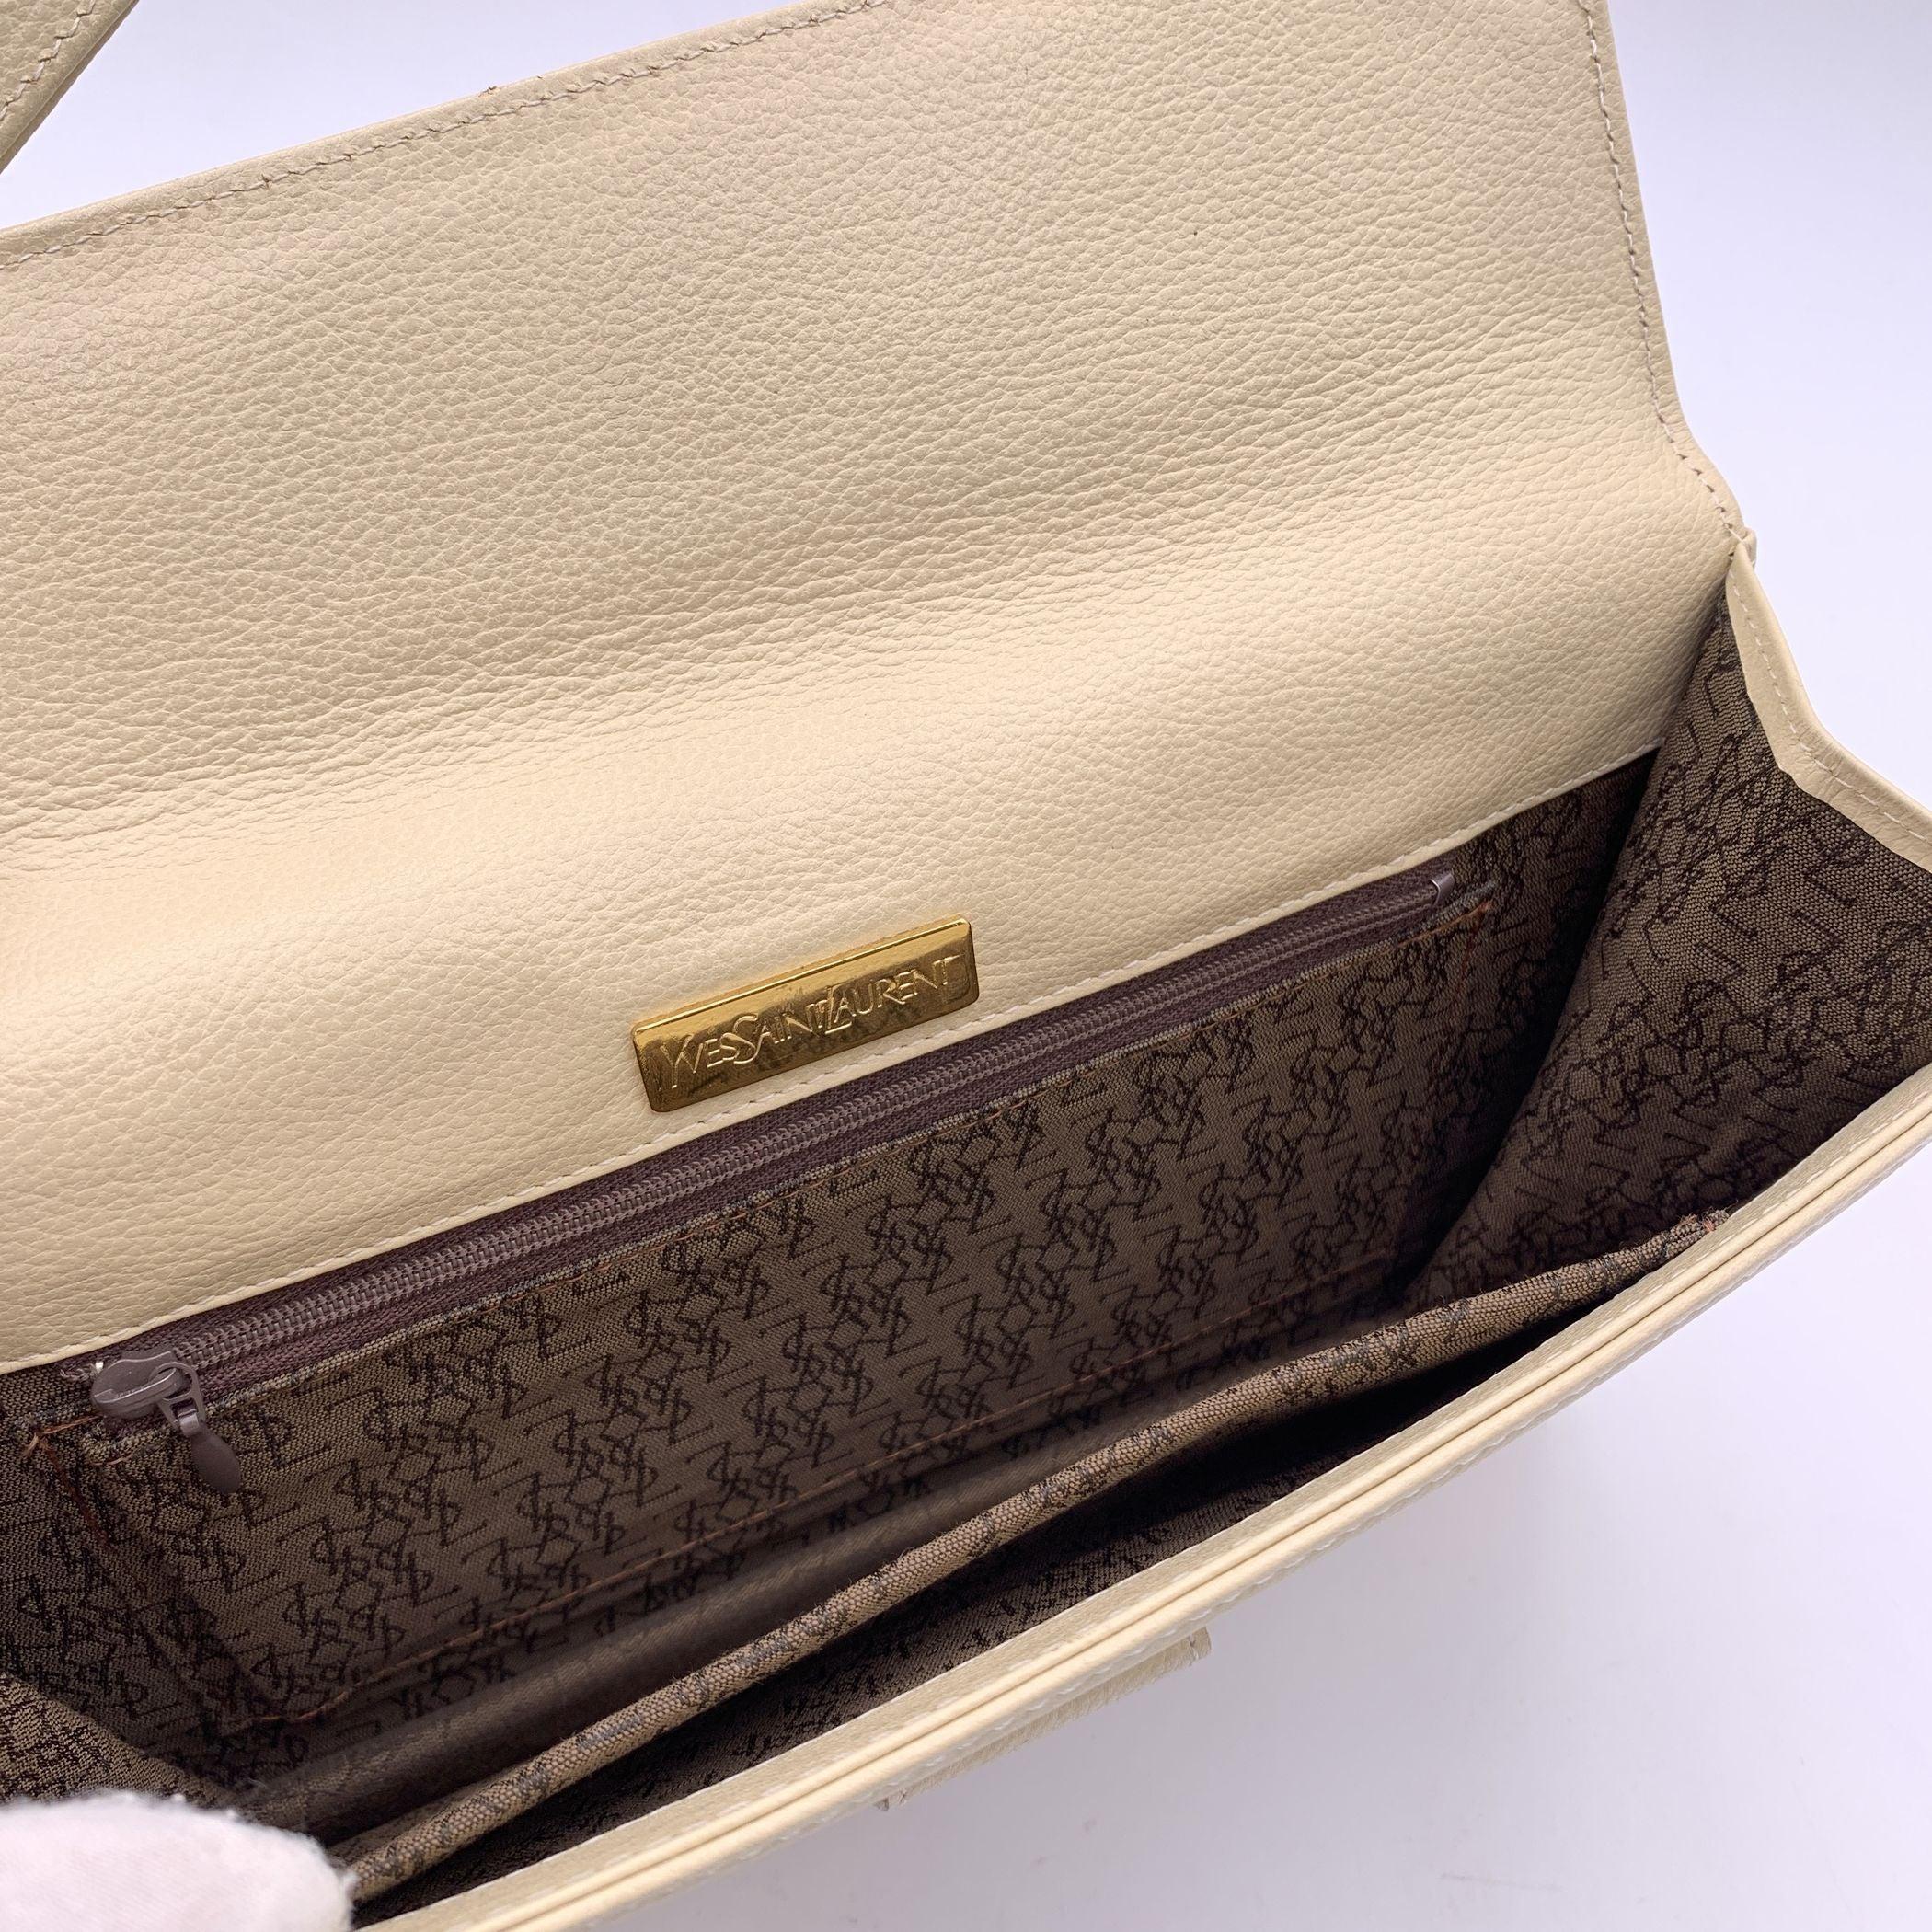 Yves Saint Laurent Vintage Beige Leather Clutch Bag Handbag 1